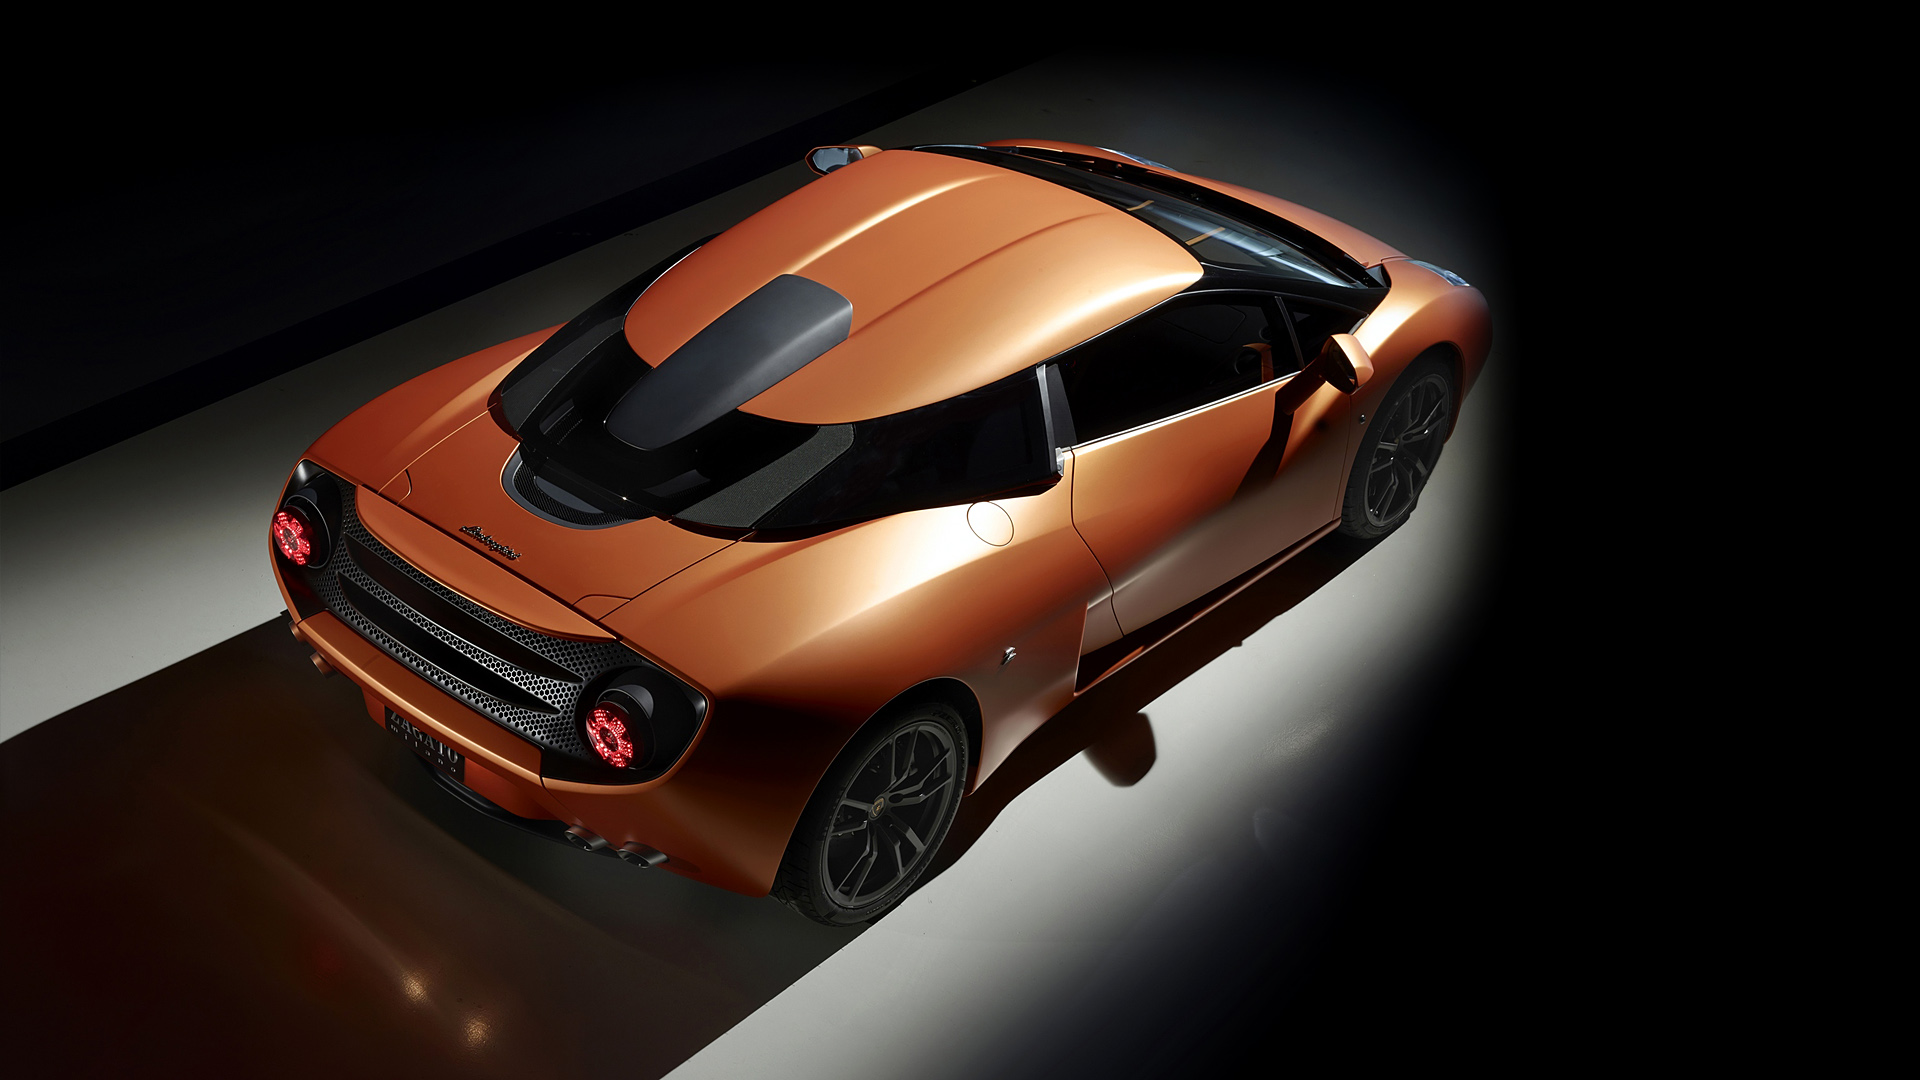  2014 Lamborghini 5-95 Zagato Concept Wallpaper.